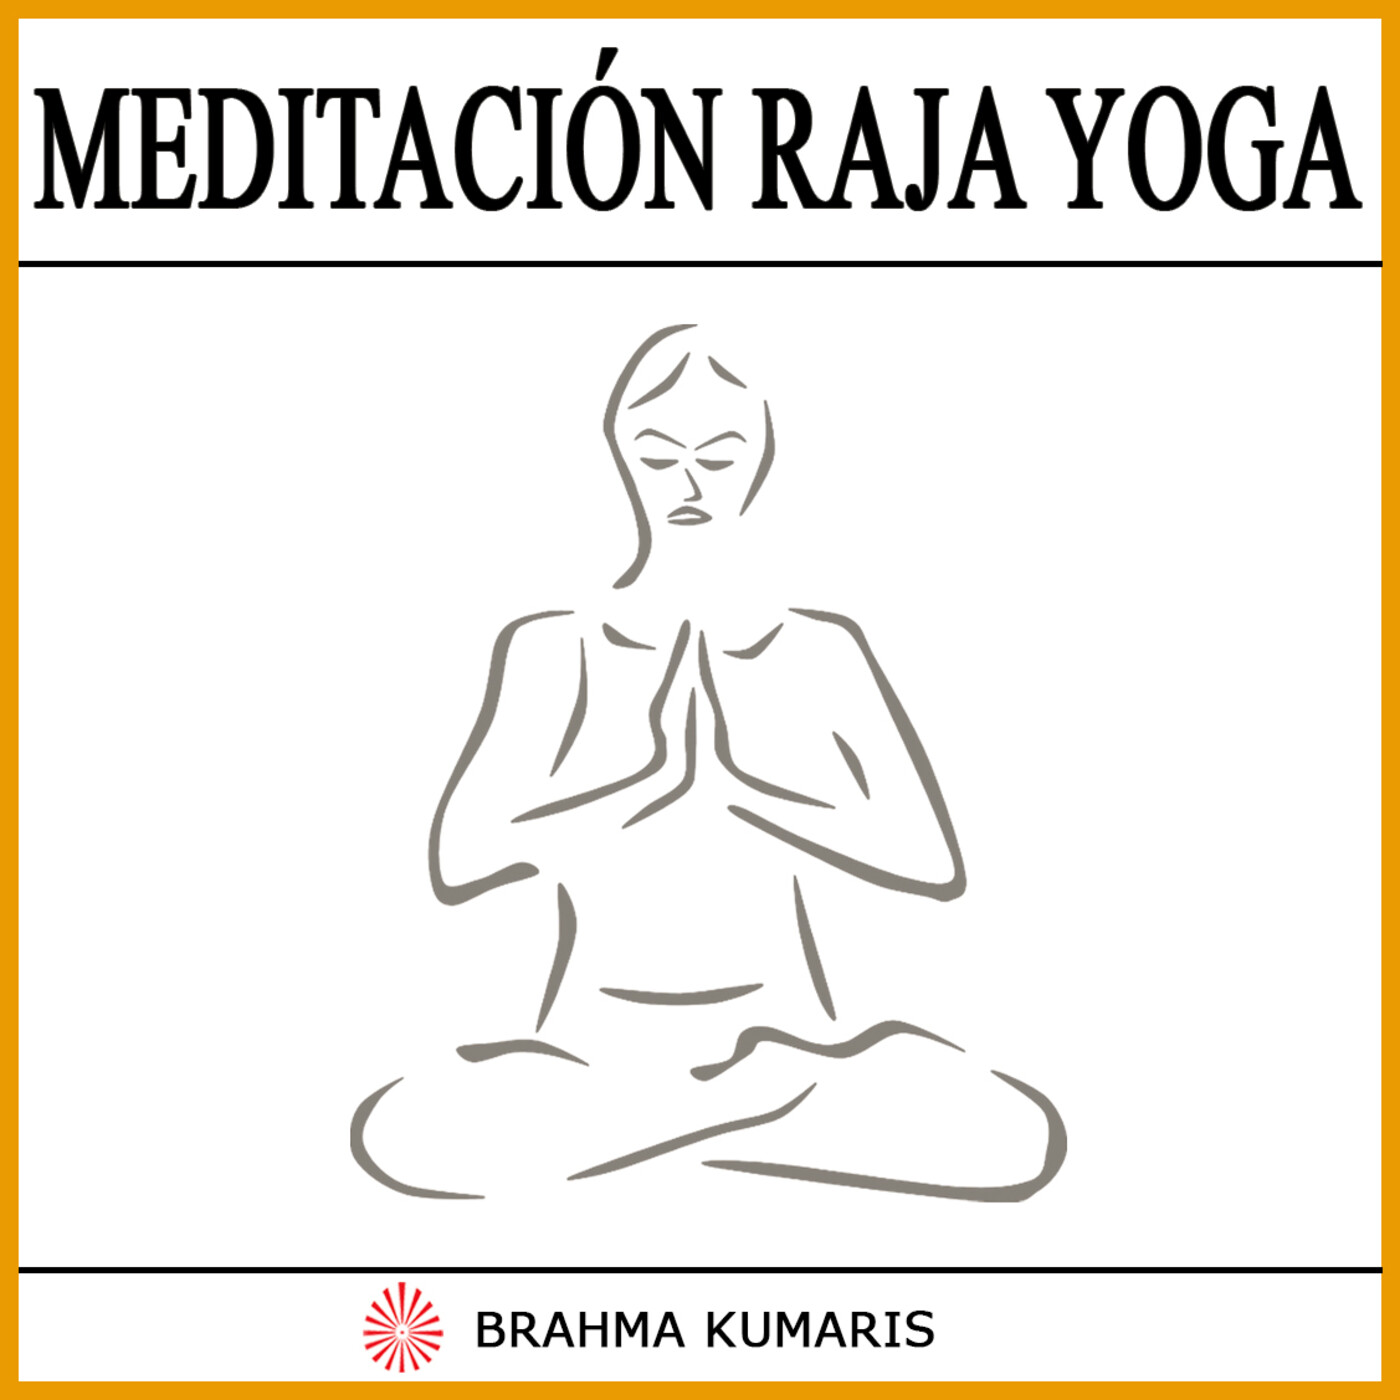 Meditación Raja Yoga.